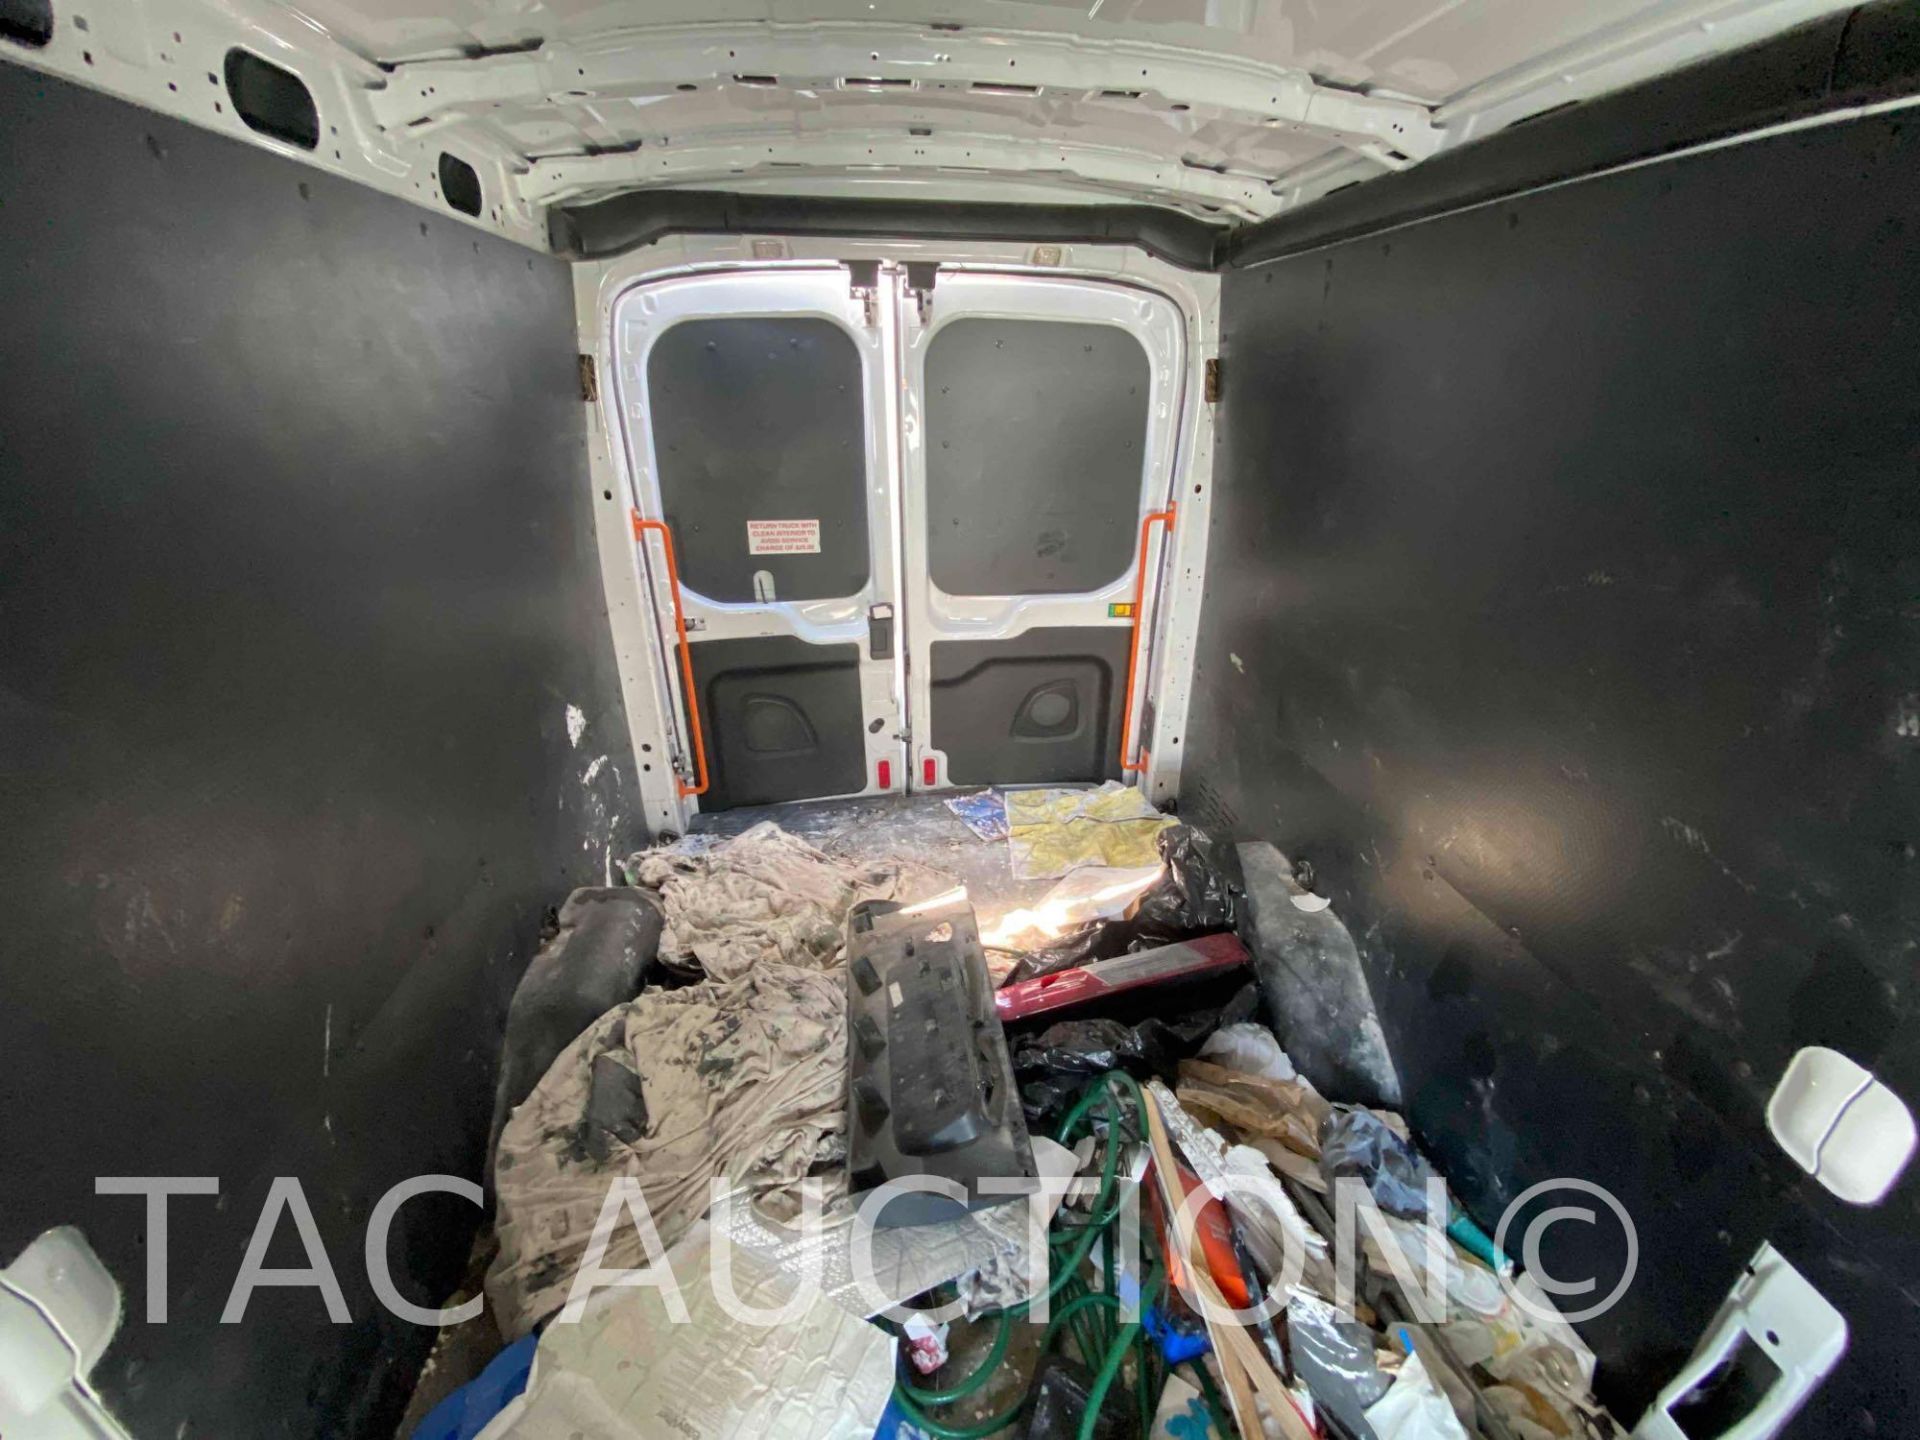 2019 Ford Transit 150 Cargo Van - Image 27 of 41